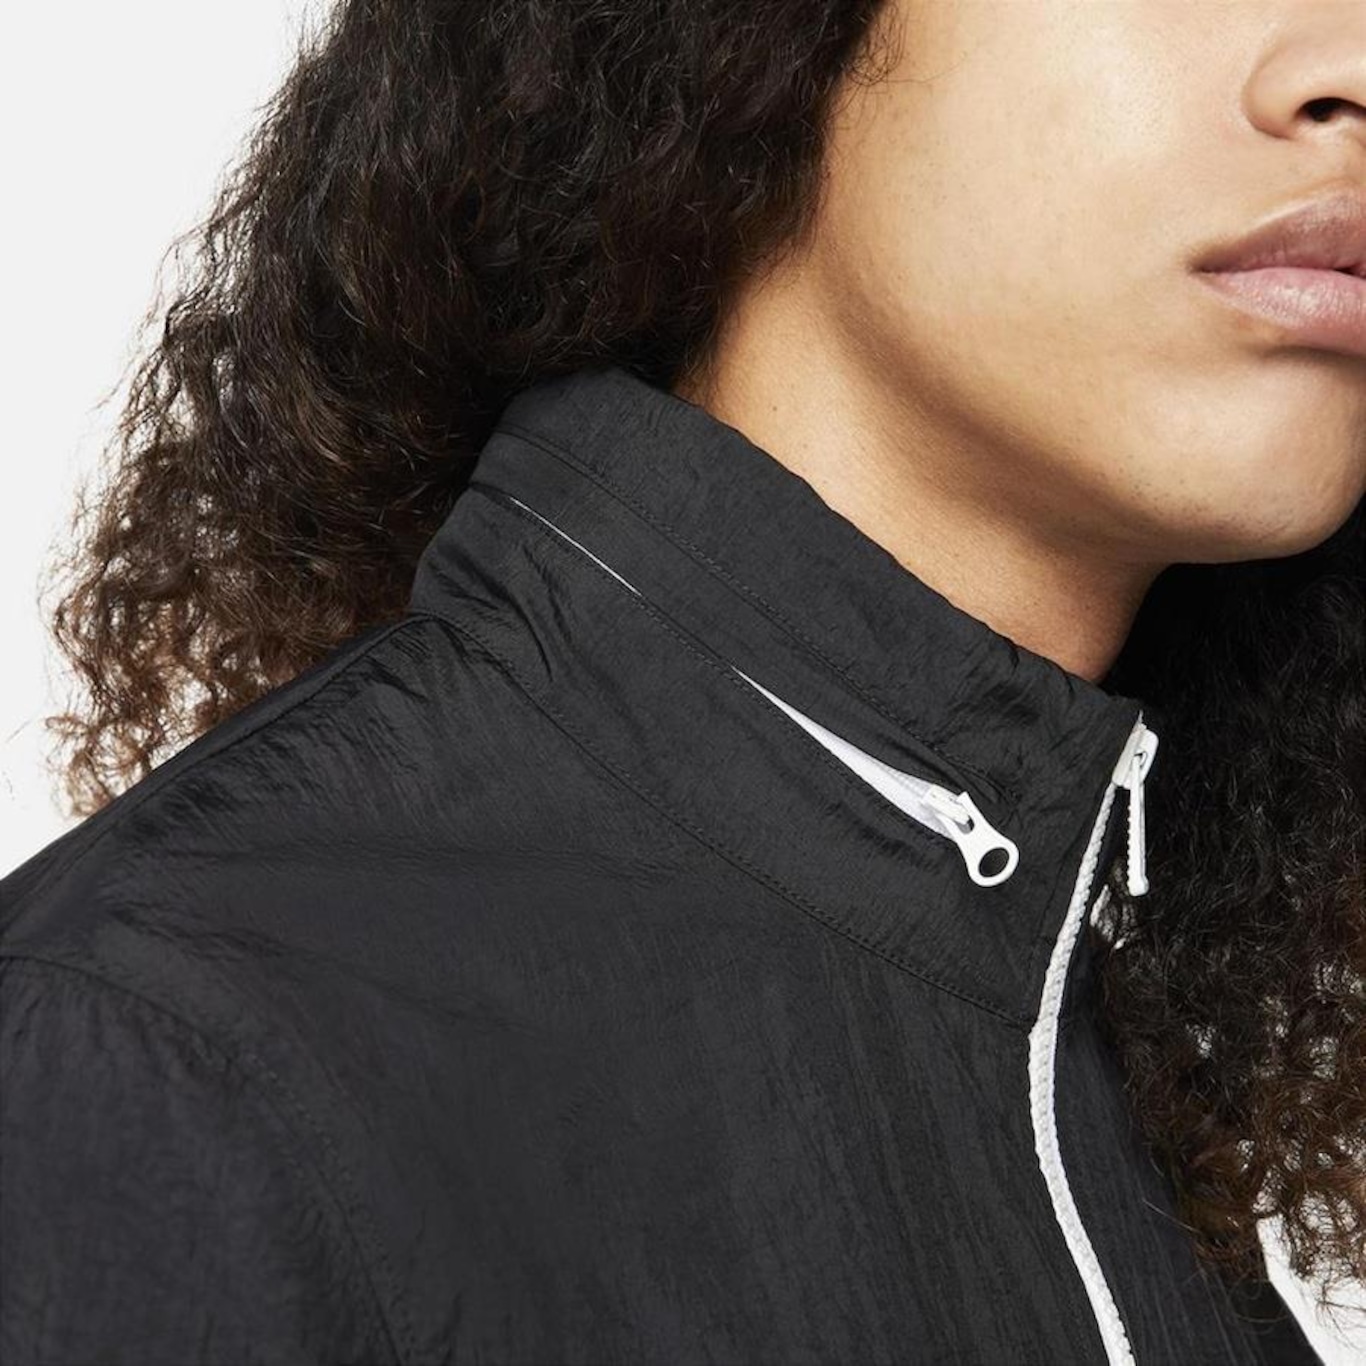 Agasalho Nike Sportswear Sport Essentials Masculino - Escorrega o Preço